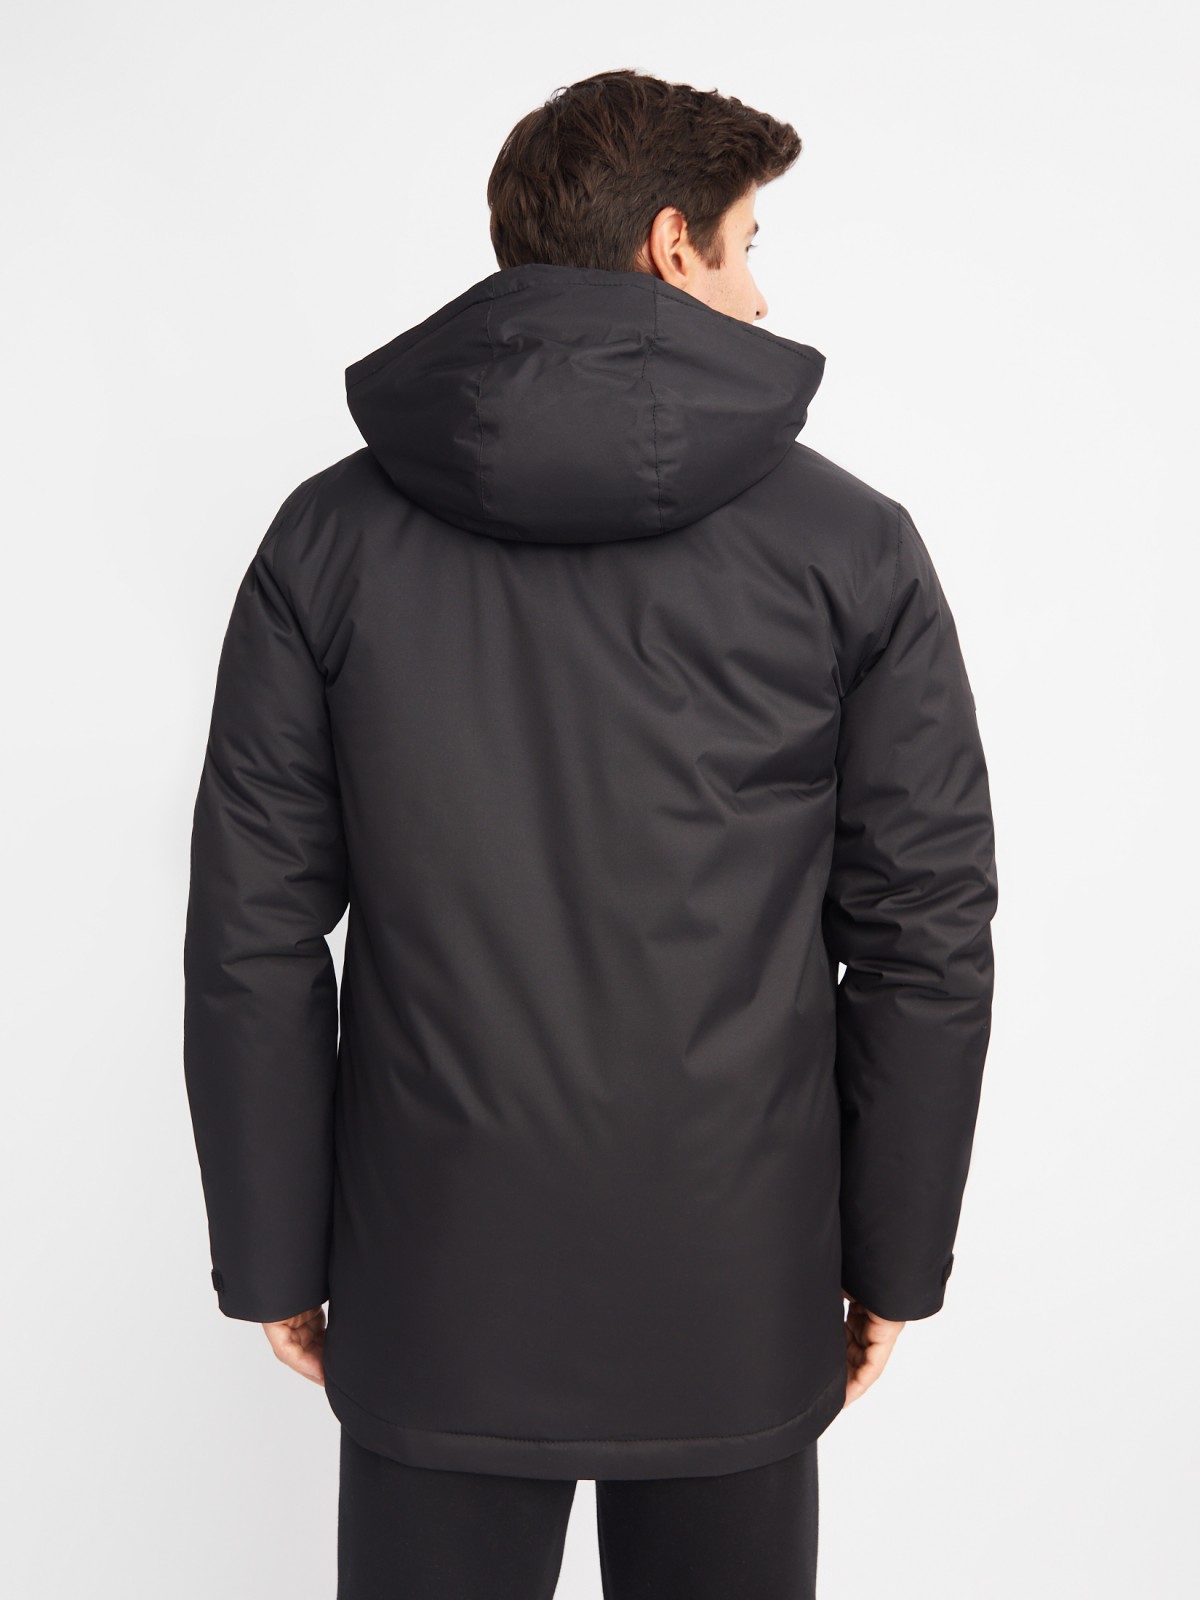 Тёплая куртка с капюшоном на синтепоне zolla 01412510L124, цвет черный, размер M - фото 6